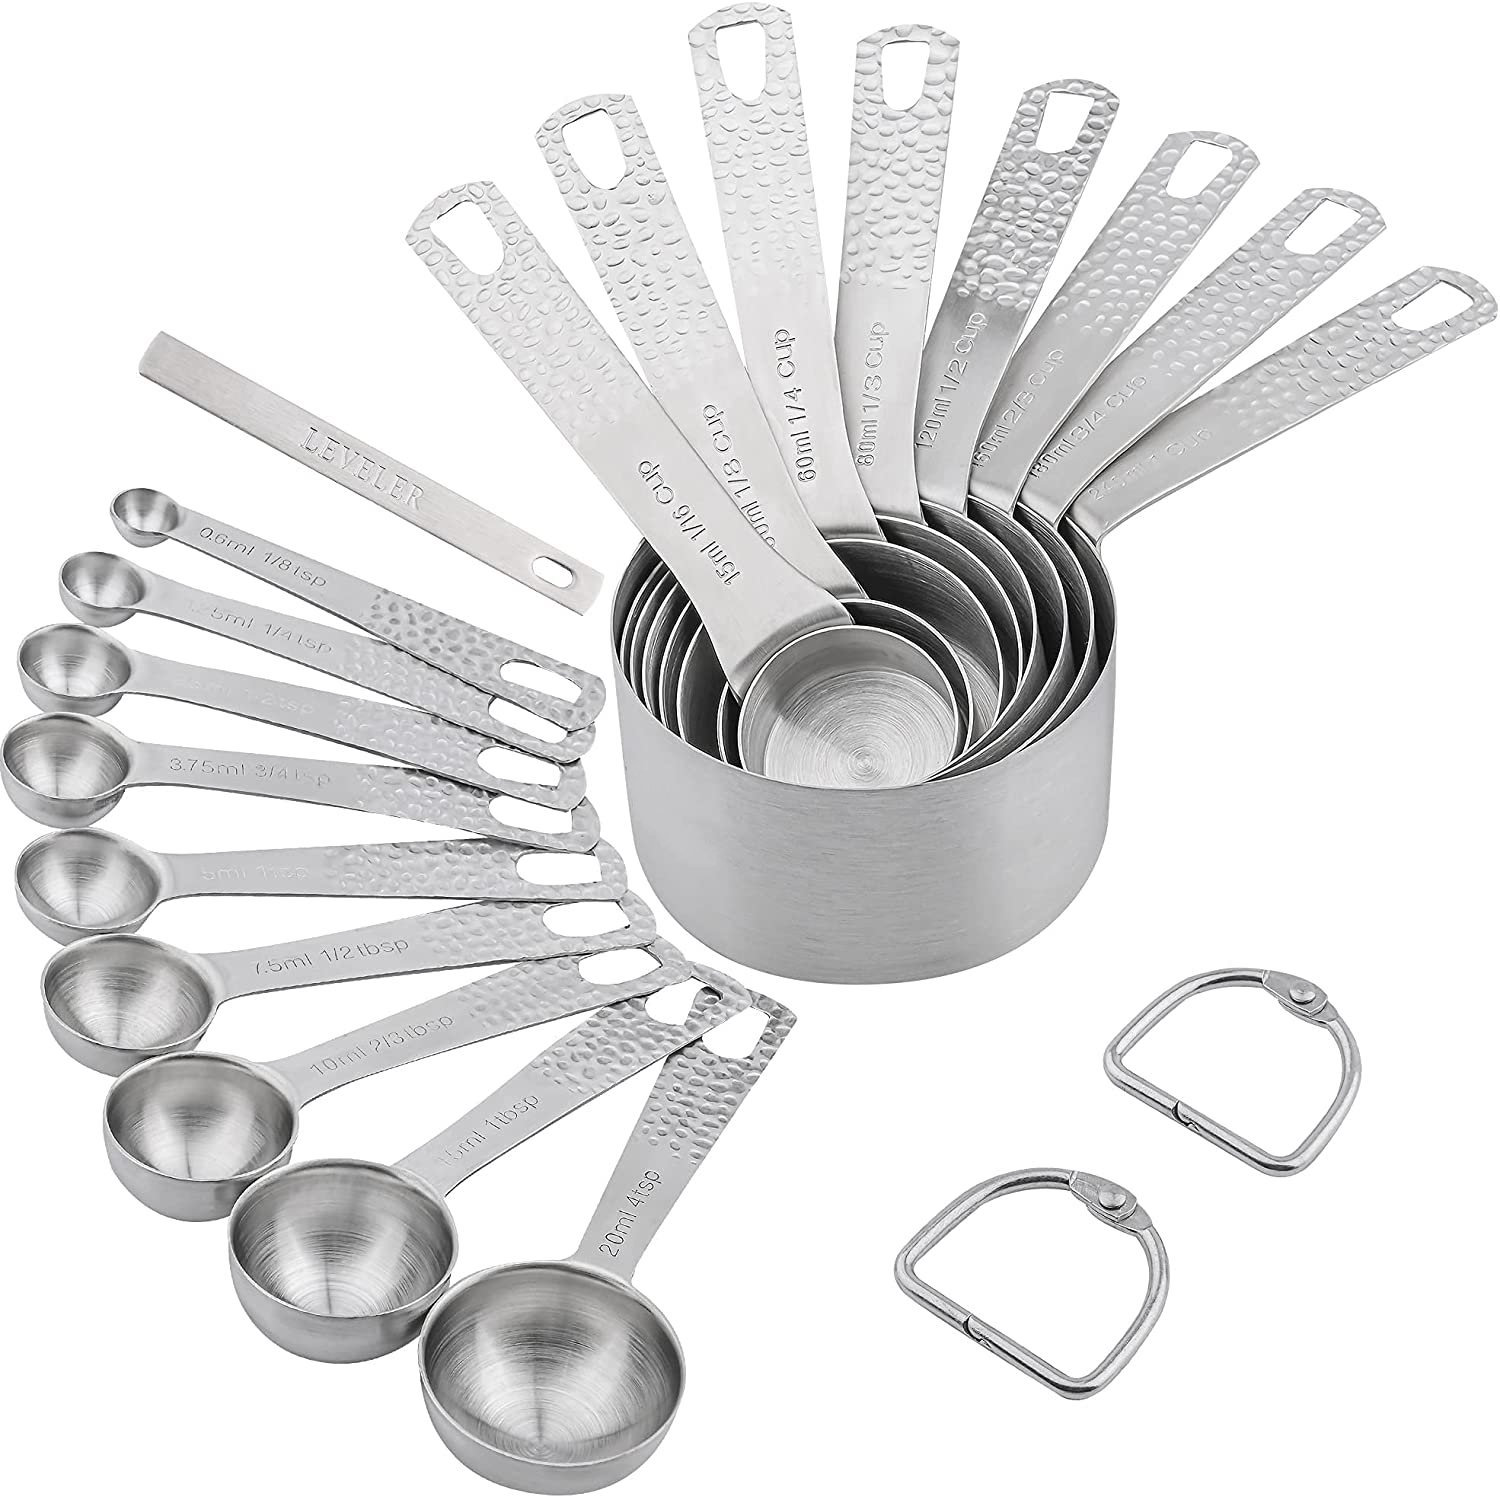 4 Pc Stainless Steel Measuring Spoon Teaspoon Set Scoop Baking Metric Tool New ! 